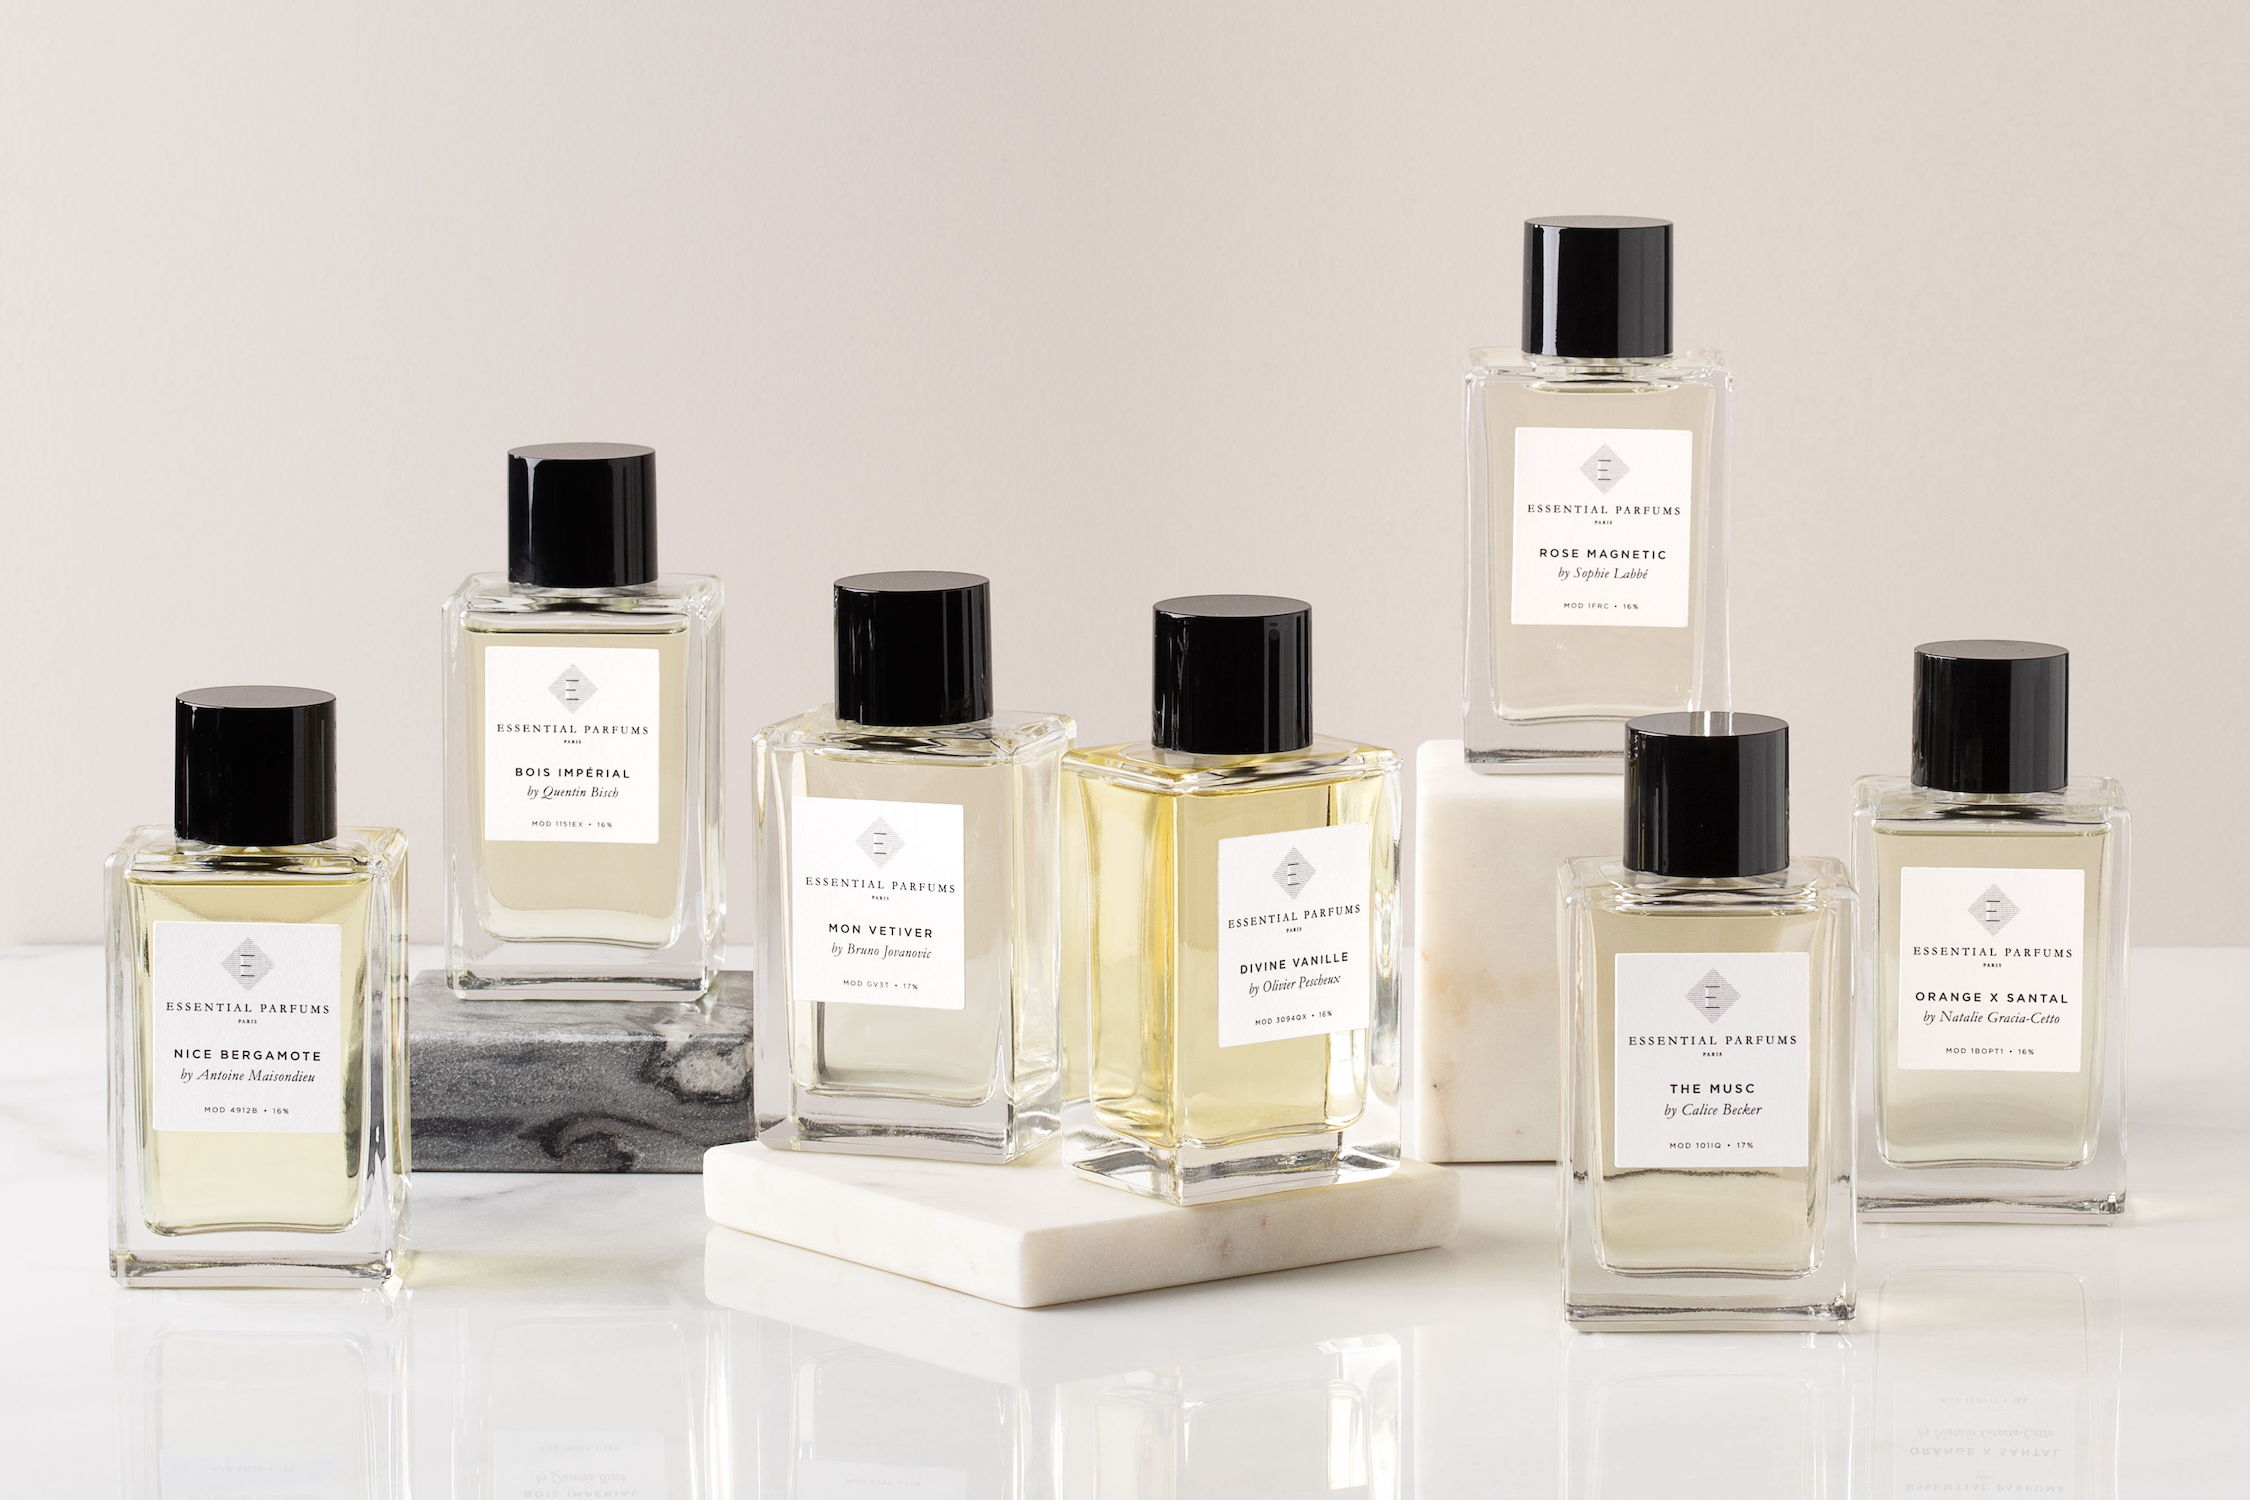 パリのフレグランスブランド「Essential Parfums」が日本上陸 (2021年9月16日) - エキサイトニュース